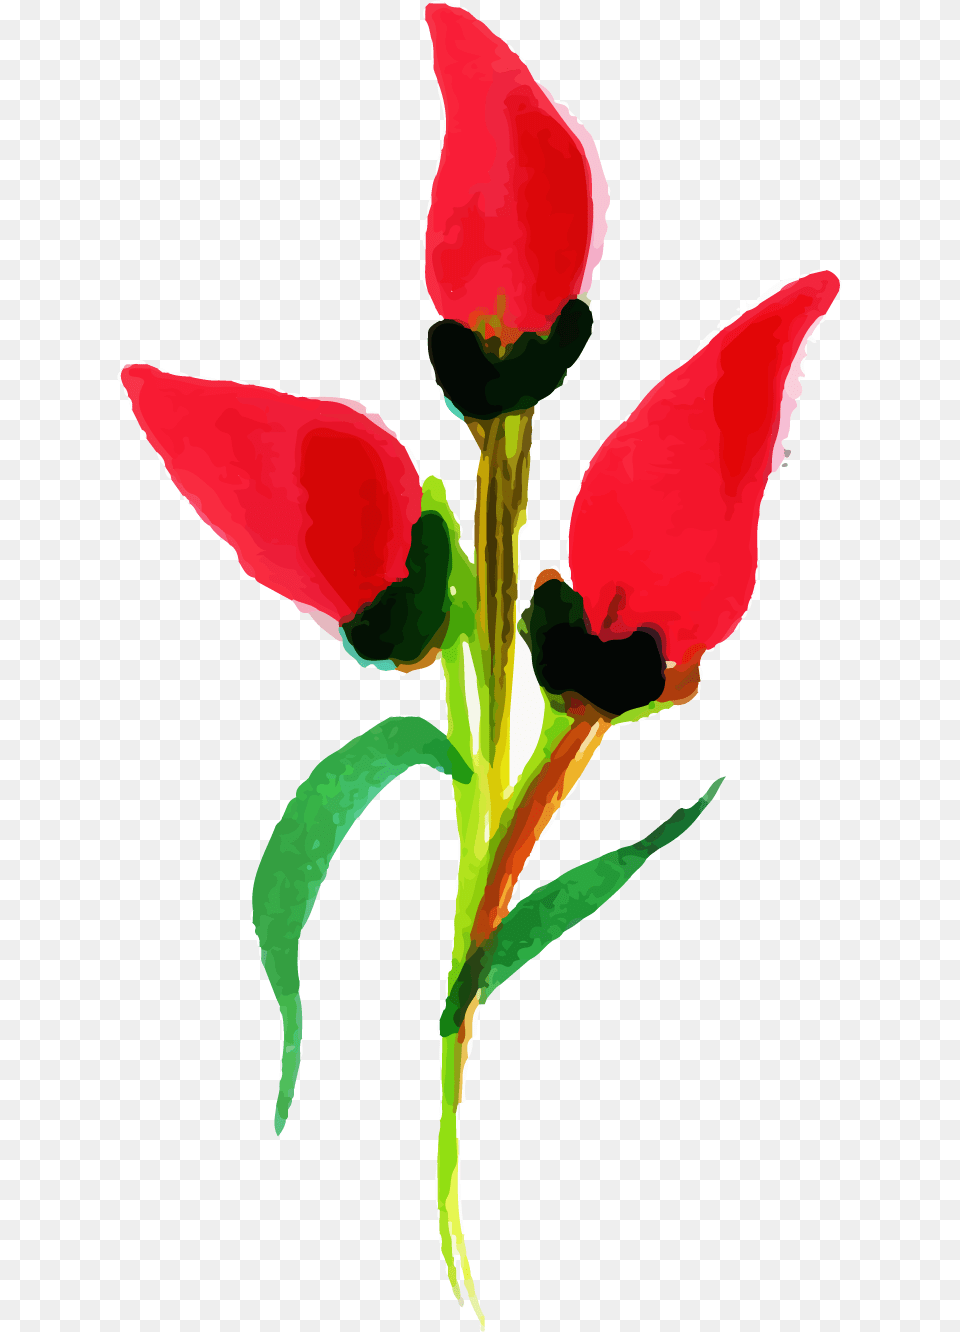 Tulip, Flower, Petal, Plant, Leaf Free Png